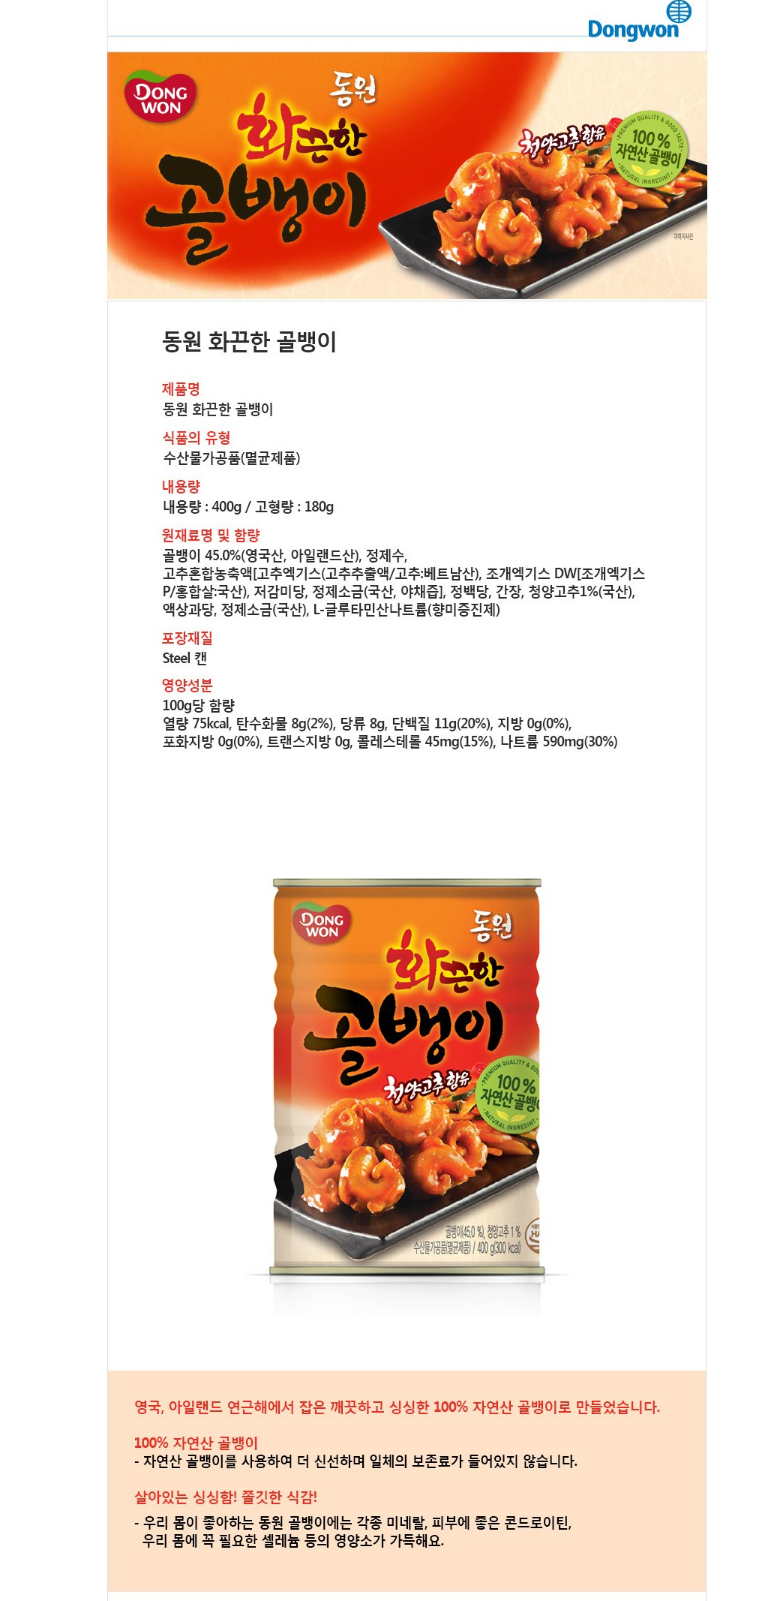 동원 화끈 골뱅이 400g / Dongwon Canned shell(hot) 400g